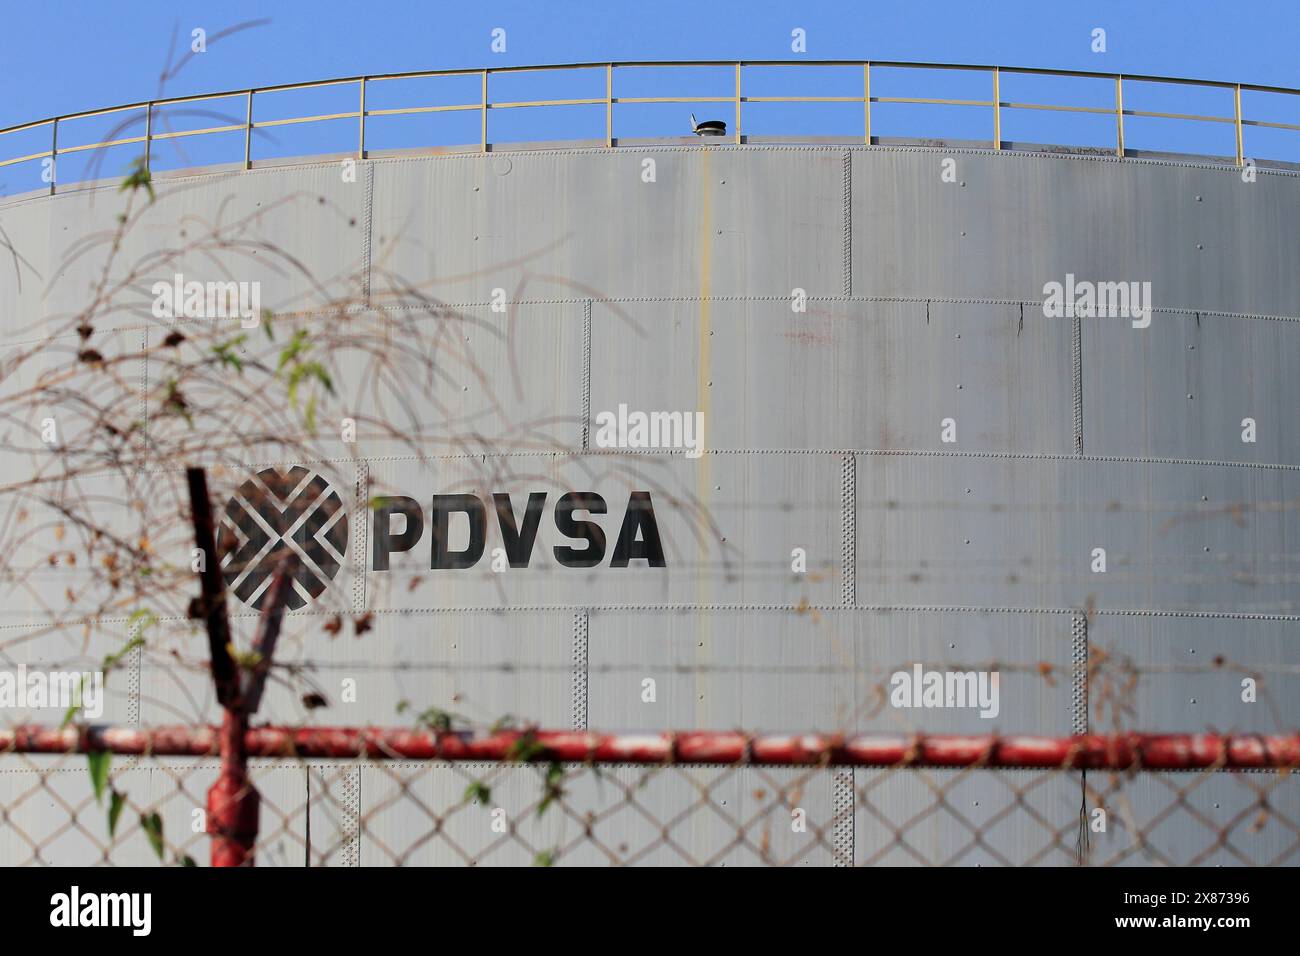 Cabimas, Venezuela. 29-01-2019. Un serbatoio dell'olio è visibile nel campo grezzo del PDVSA. Foto di: José Isaac Bula Urrutia Foto Stock